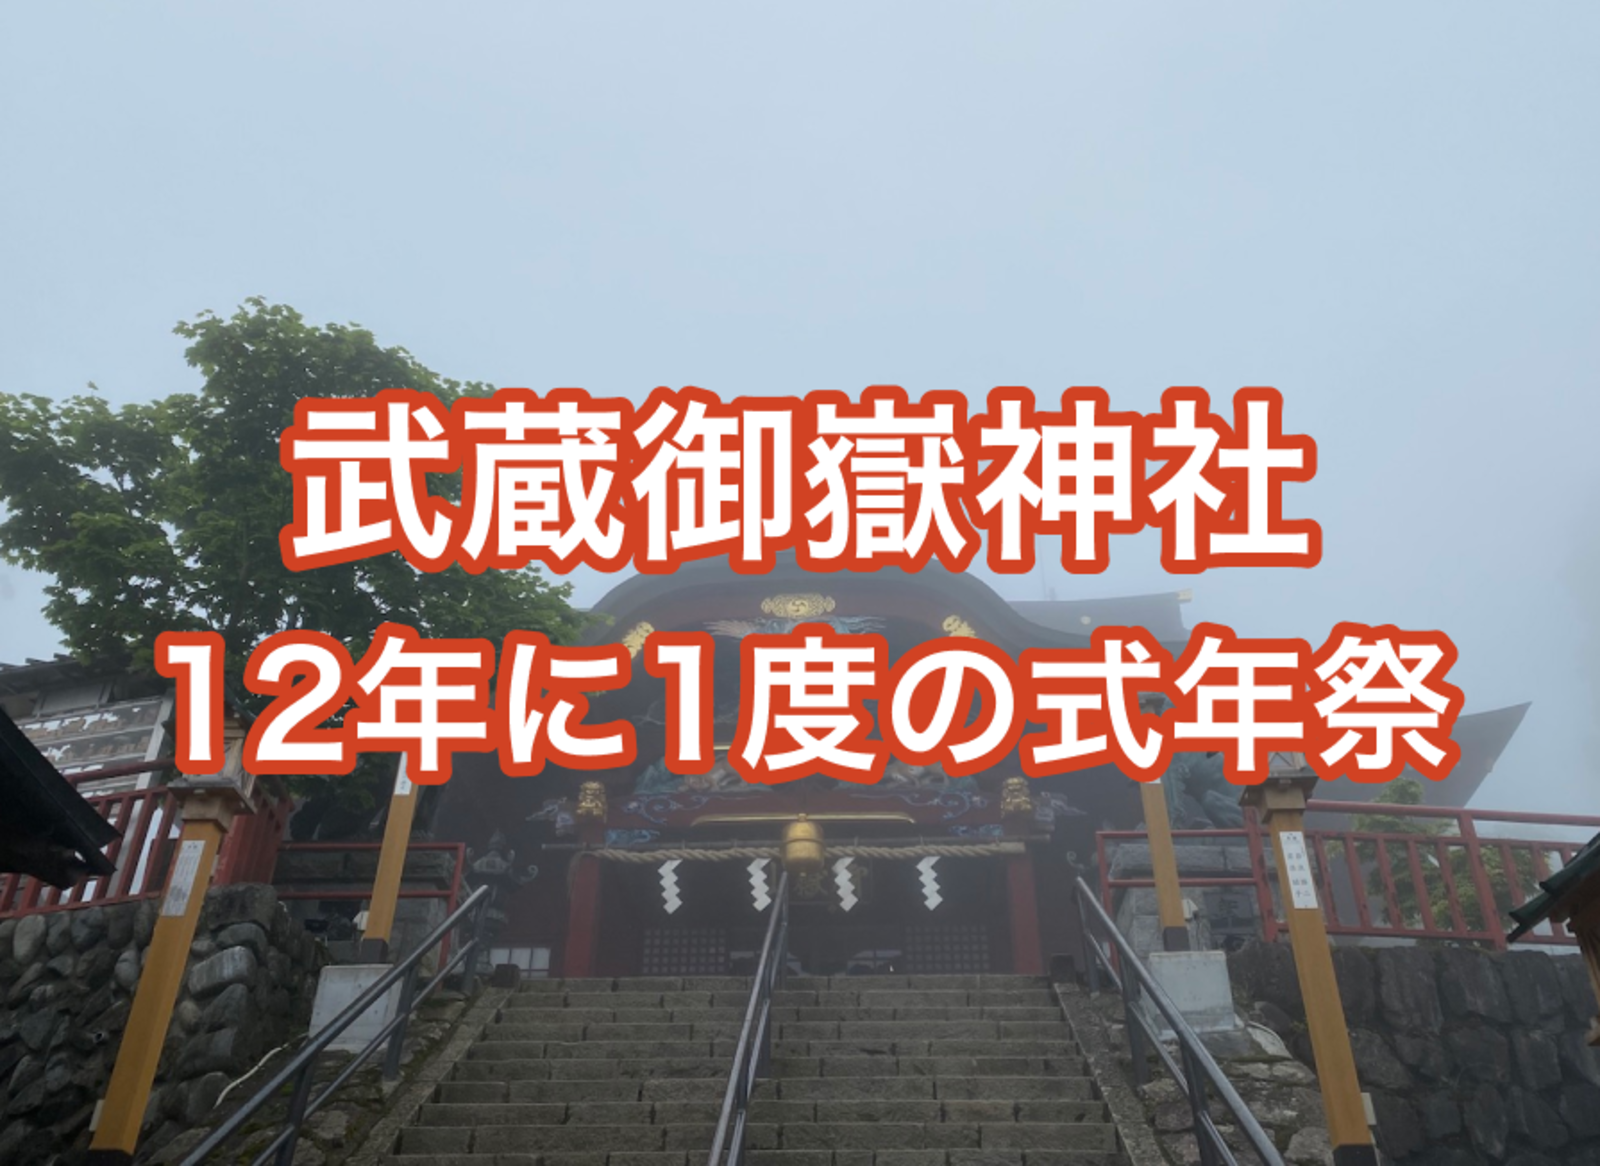 関東一円を見晴らす武蔵御嶽神社で12年に1度の式年祭に参加しよう